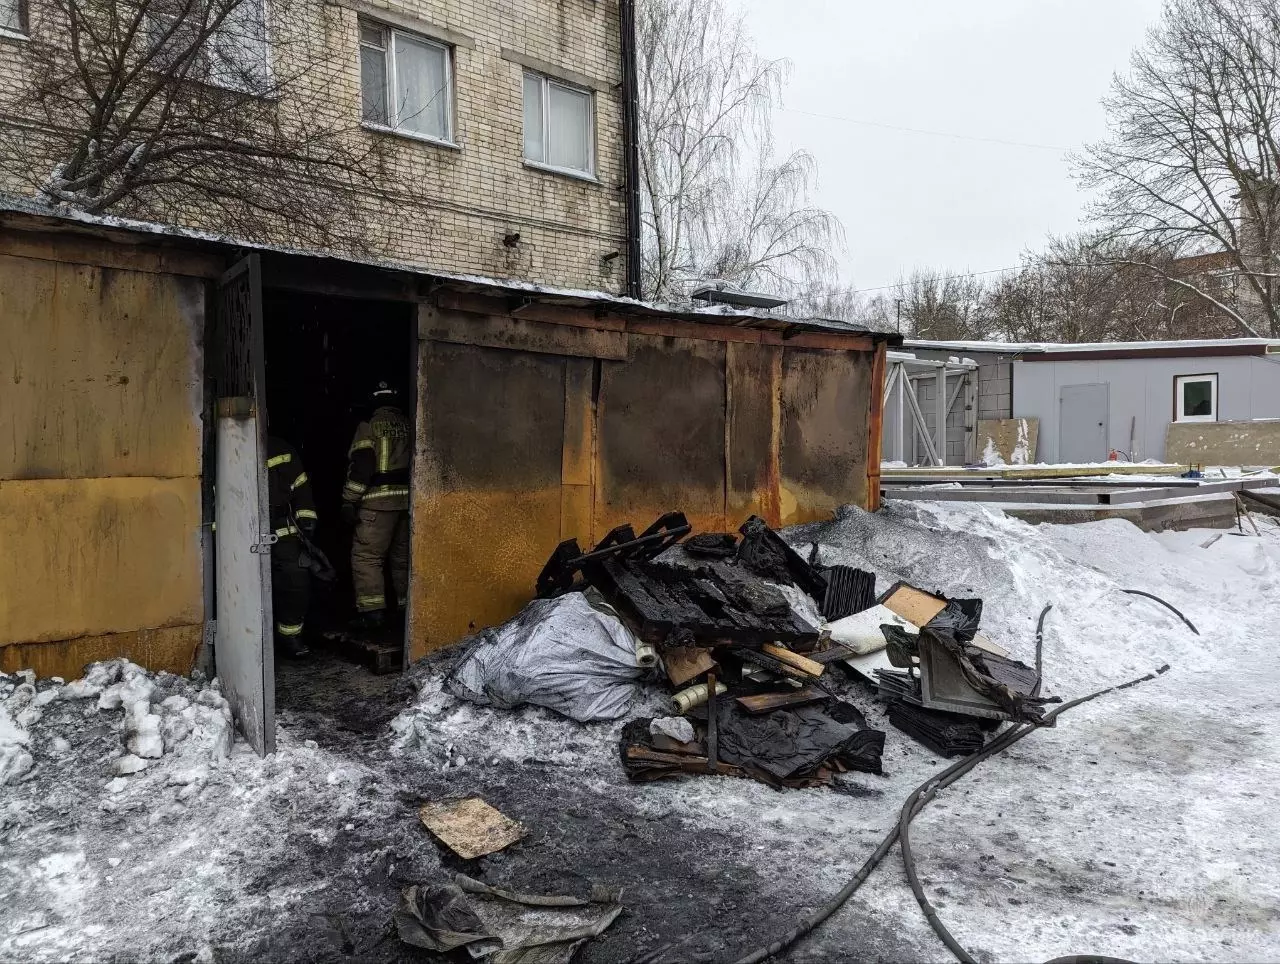 Завод горел в Нижнем Новгороде 15 января